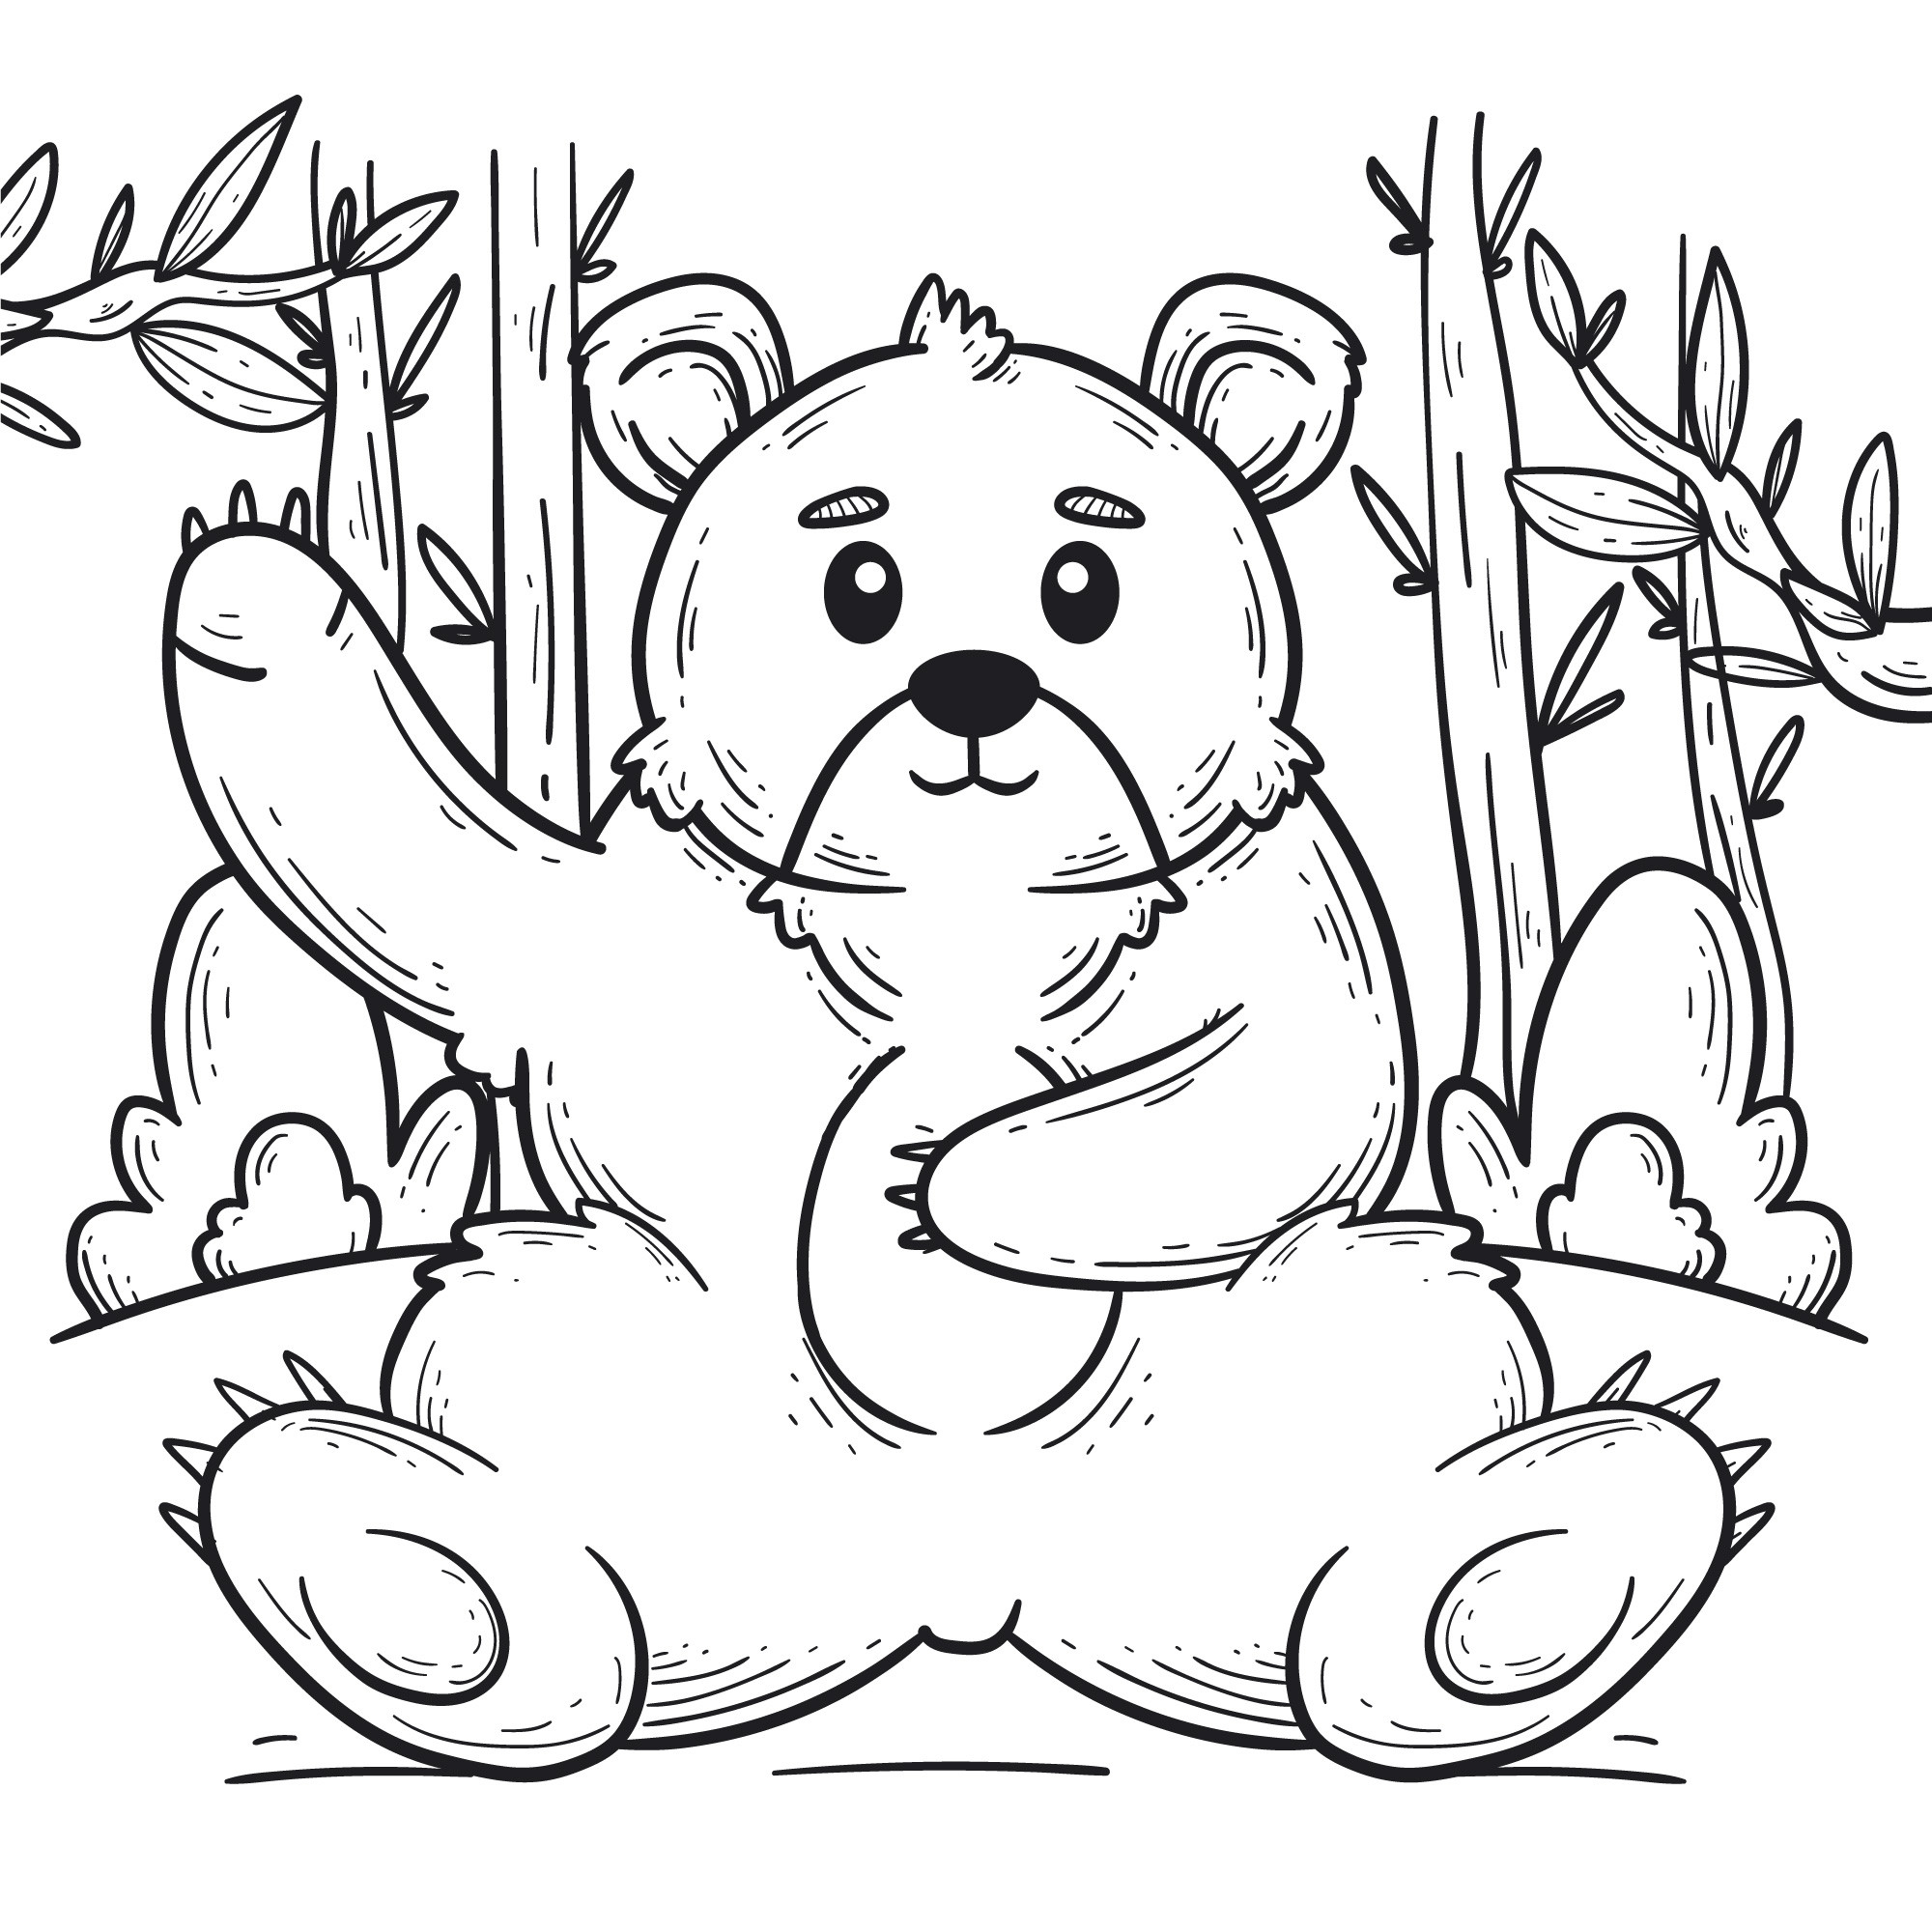 Раскраска для детей: медведь сидит на поляне и машет лапой